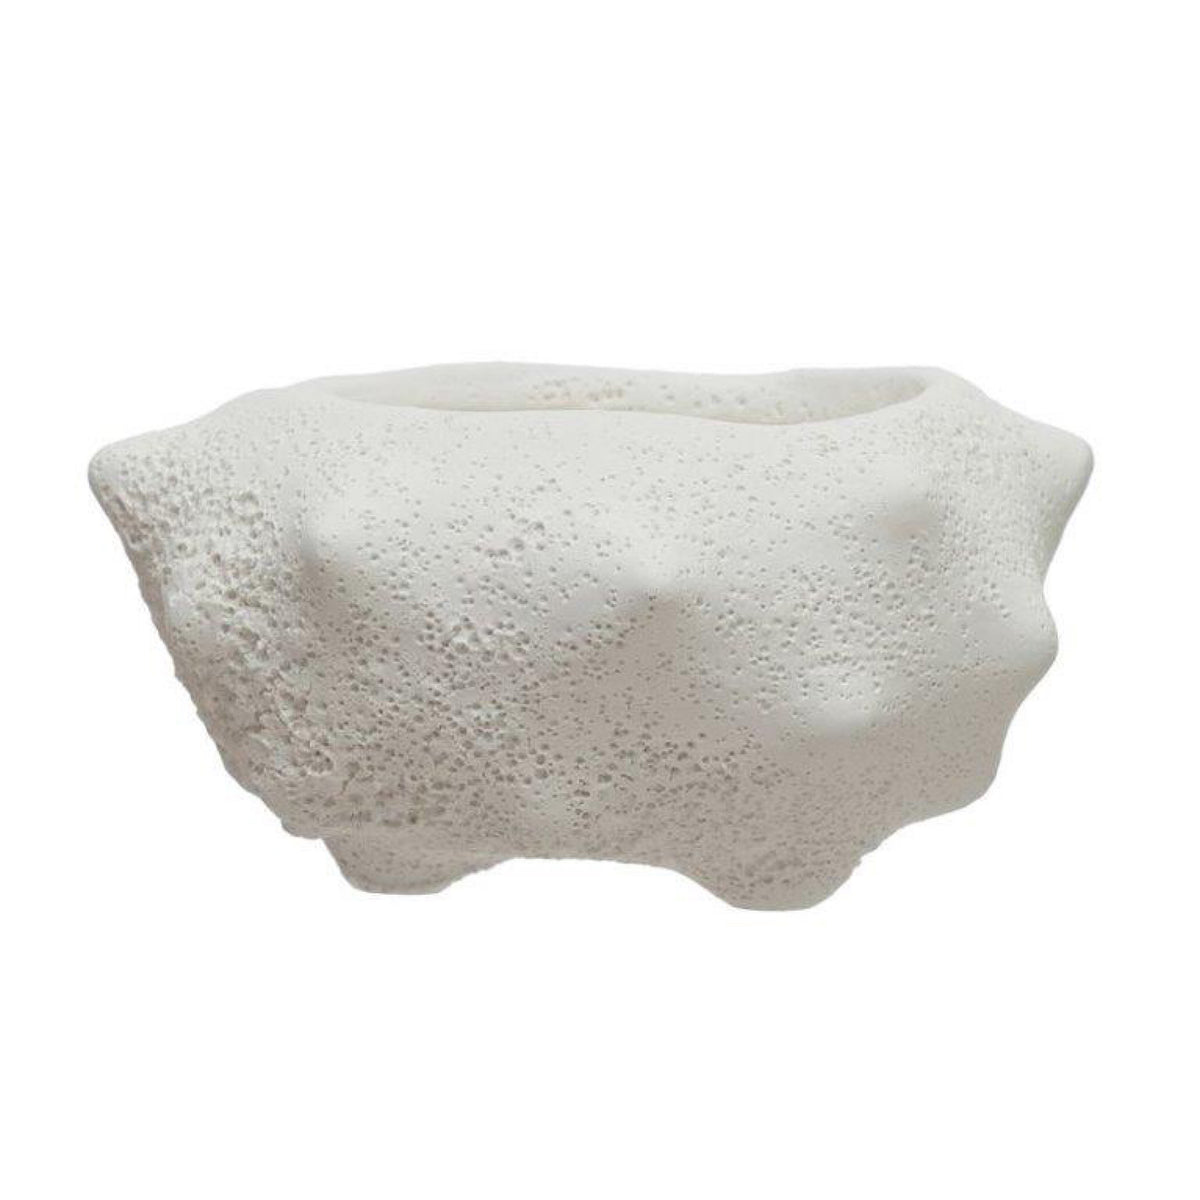 Terra-cotta Vase, White